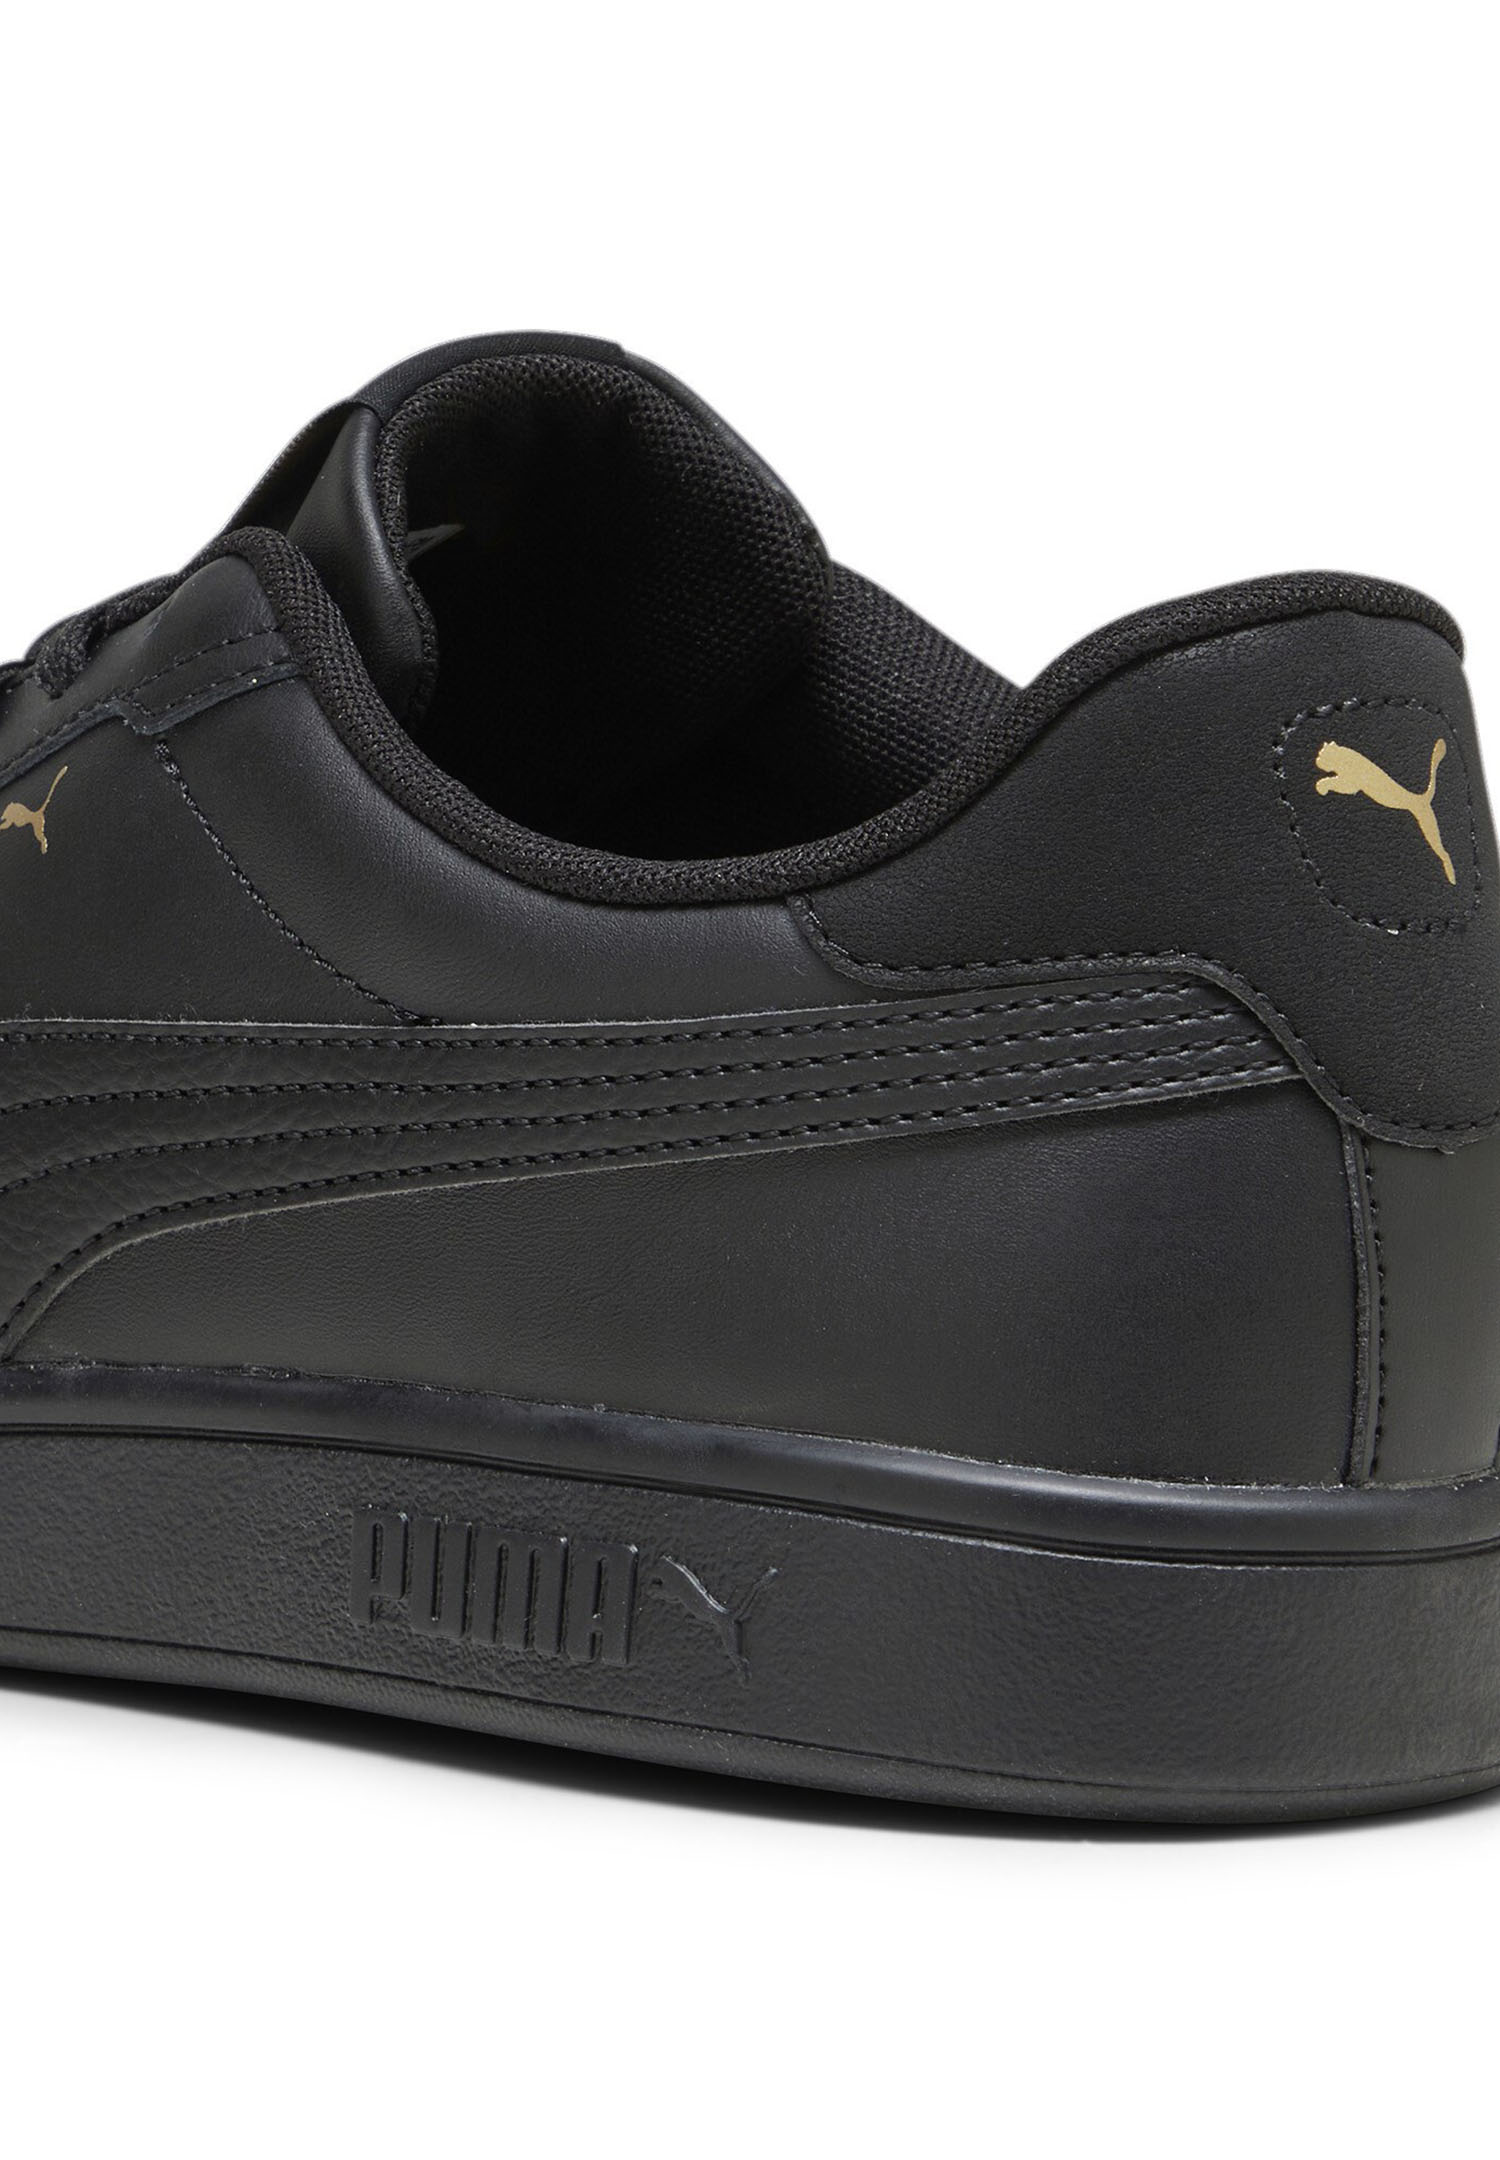 Puma SMASH 3.0 L Herren Sneaker Leder  390987 10 schwarz